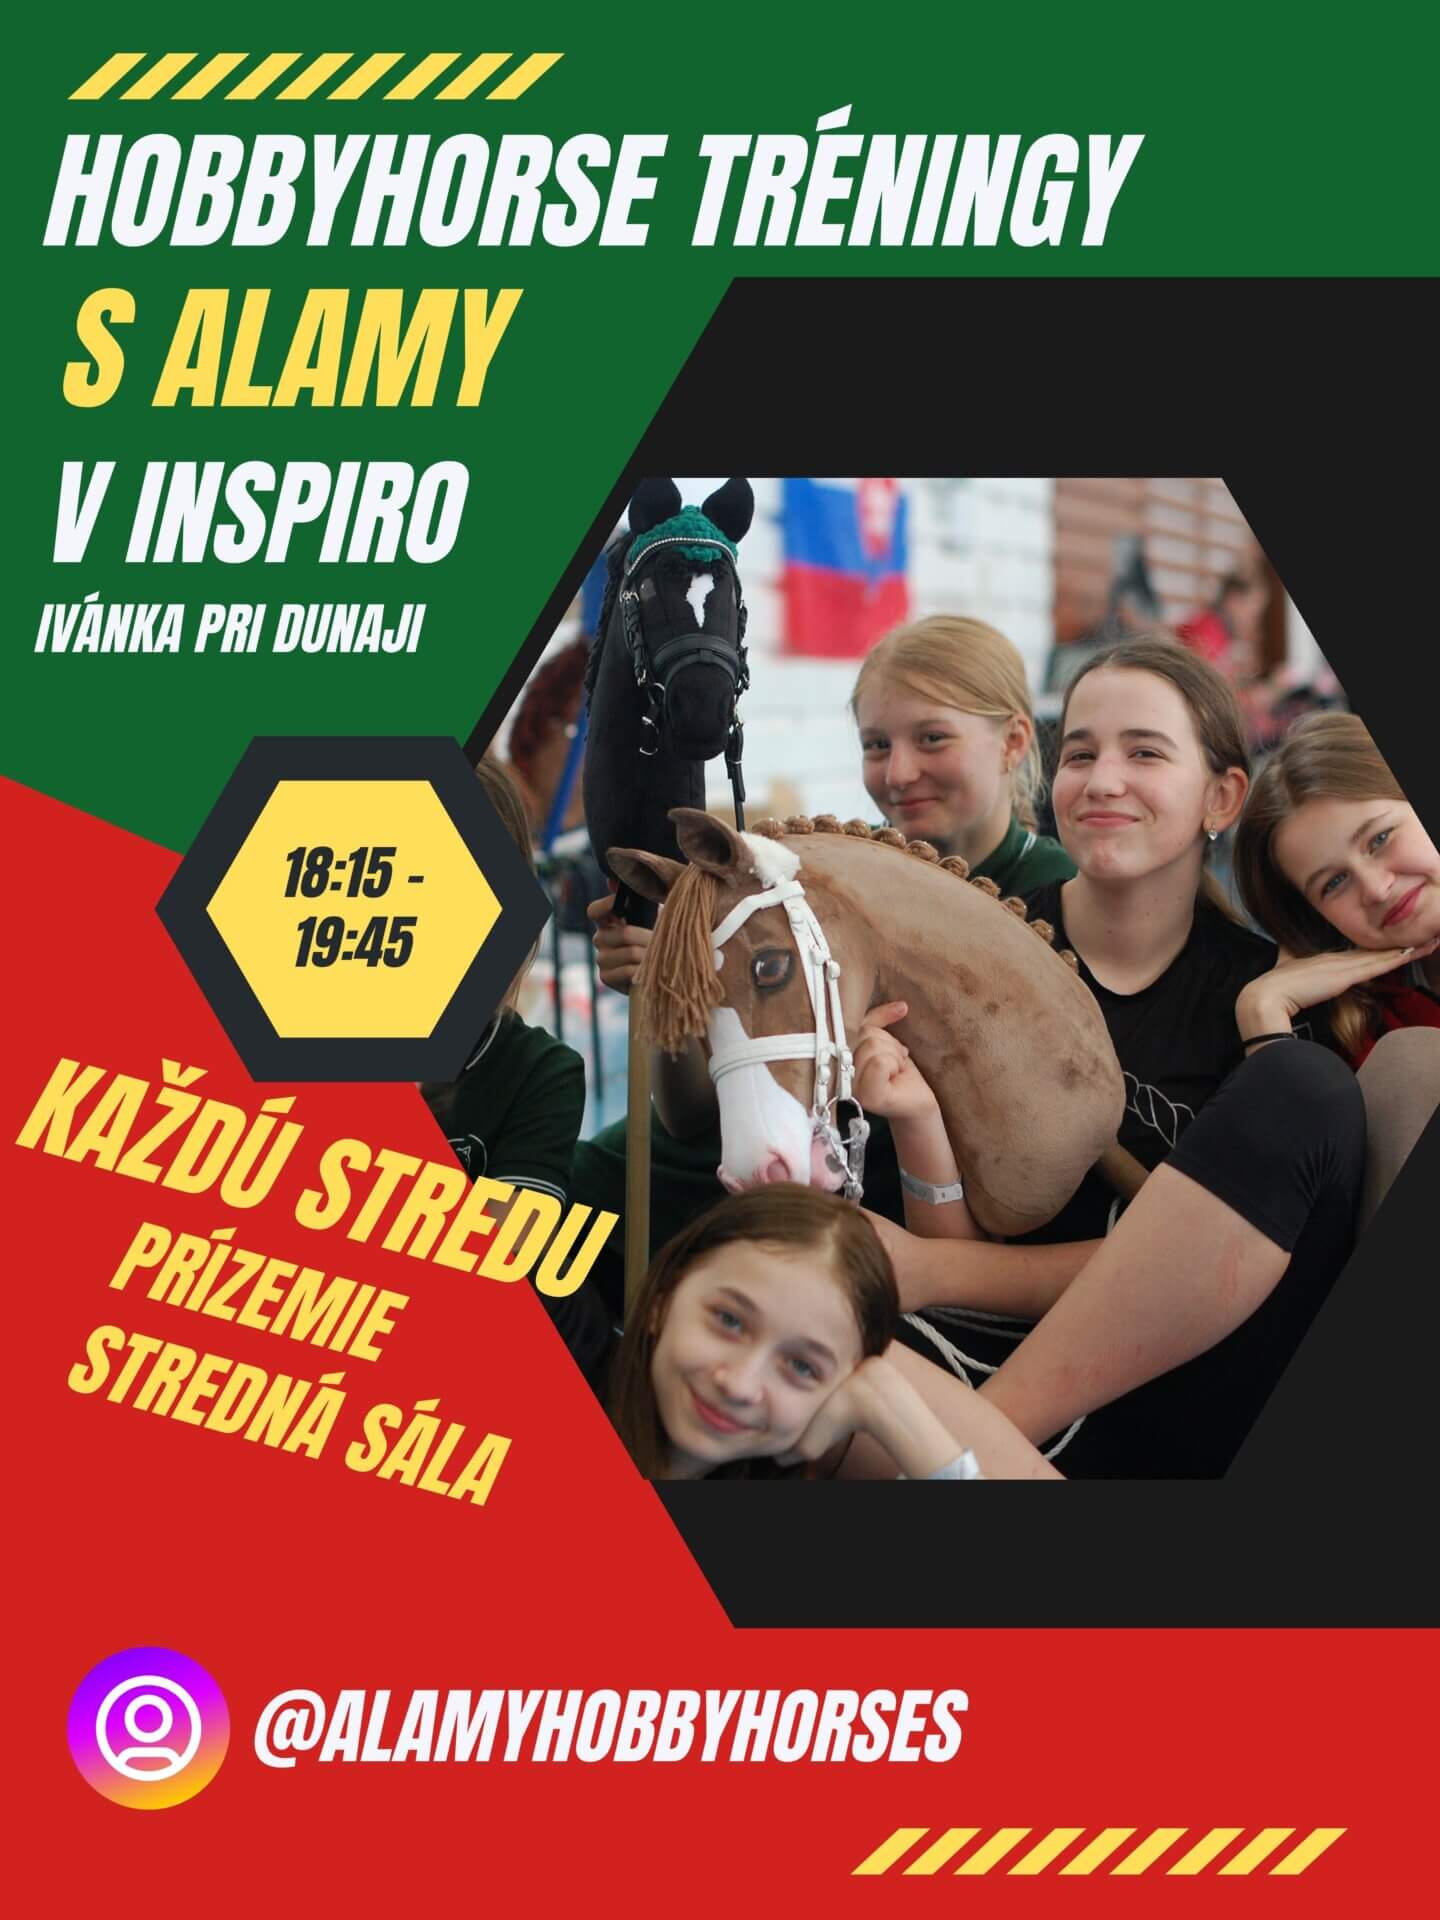 Hobbyhorse training in Inspiro